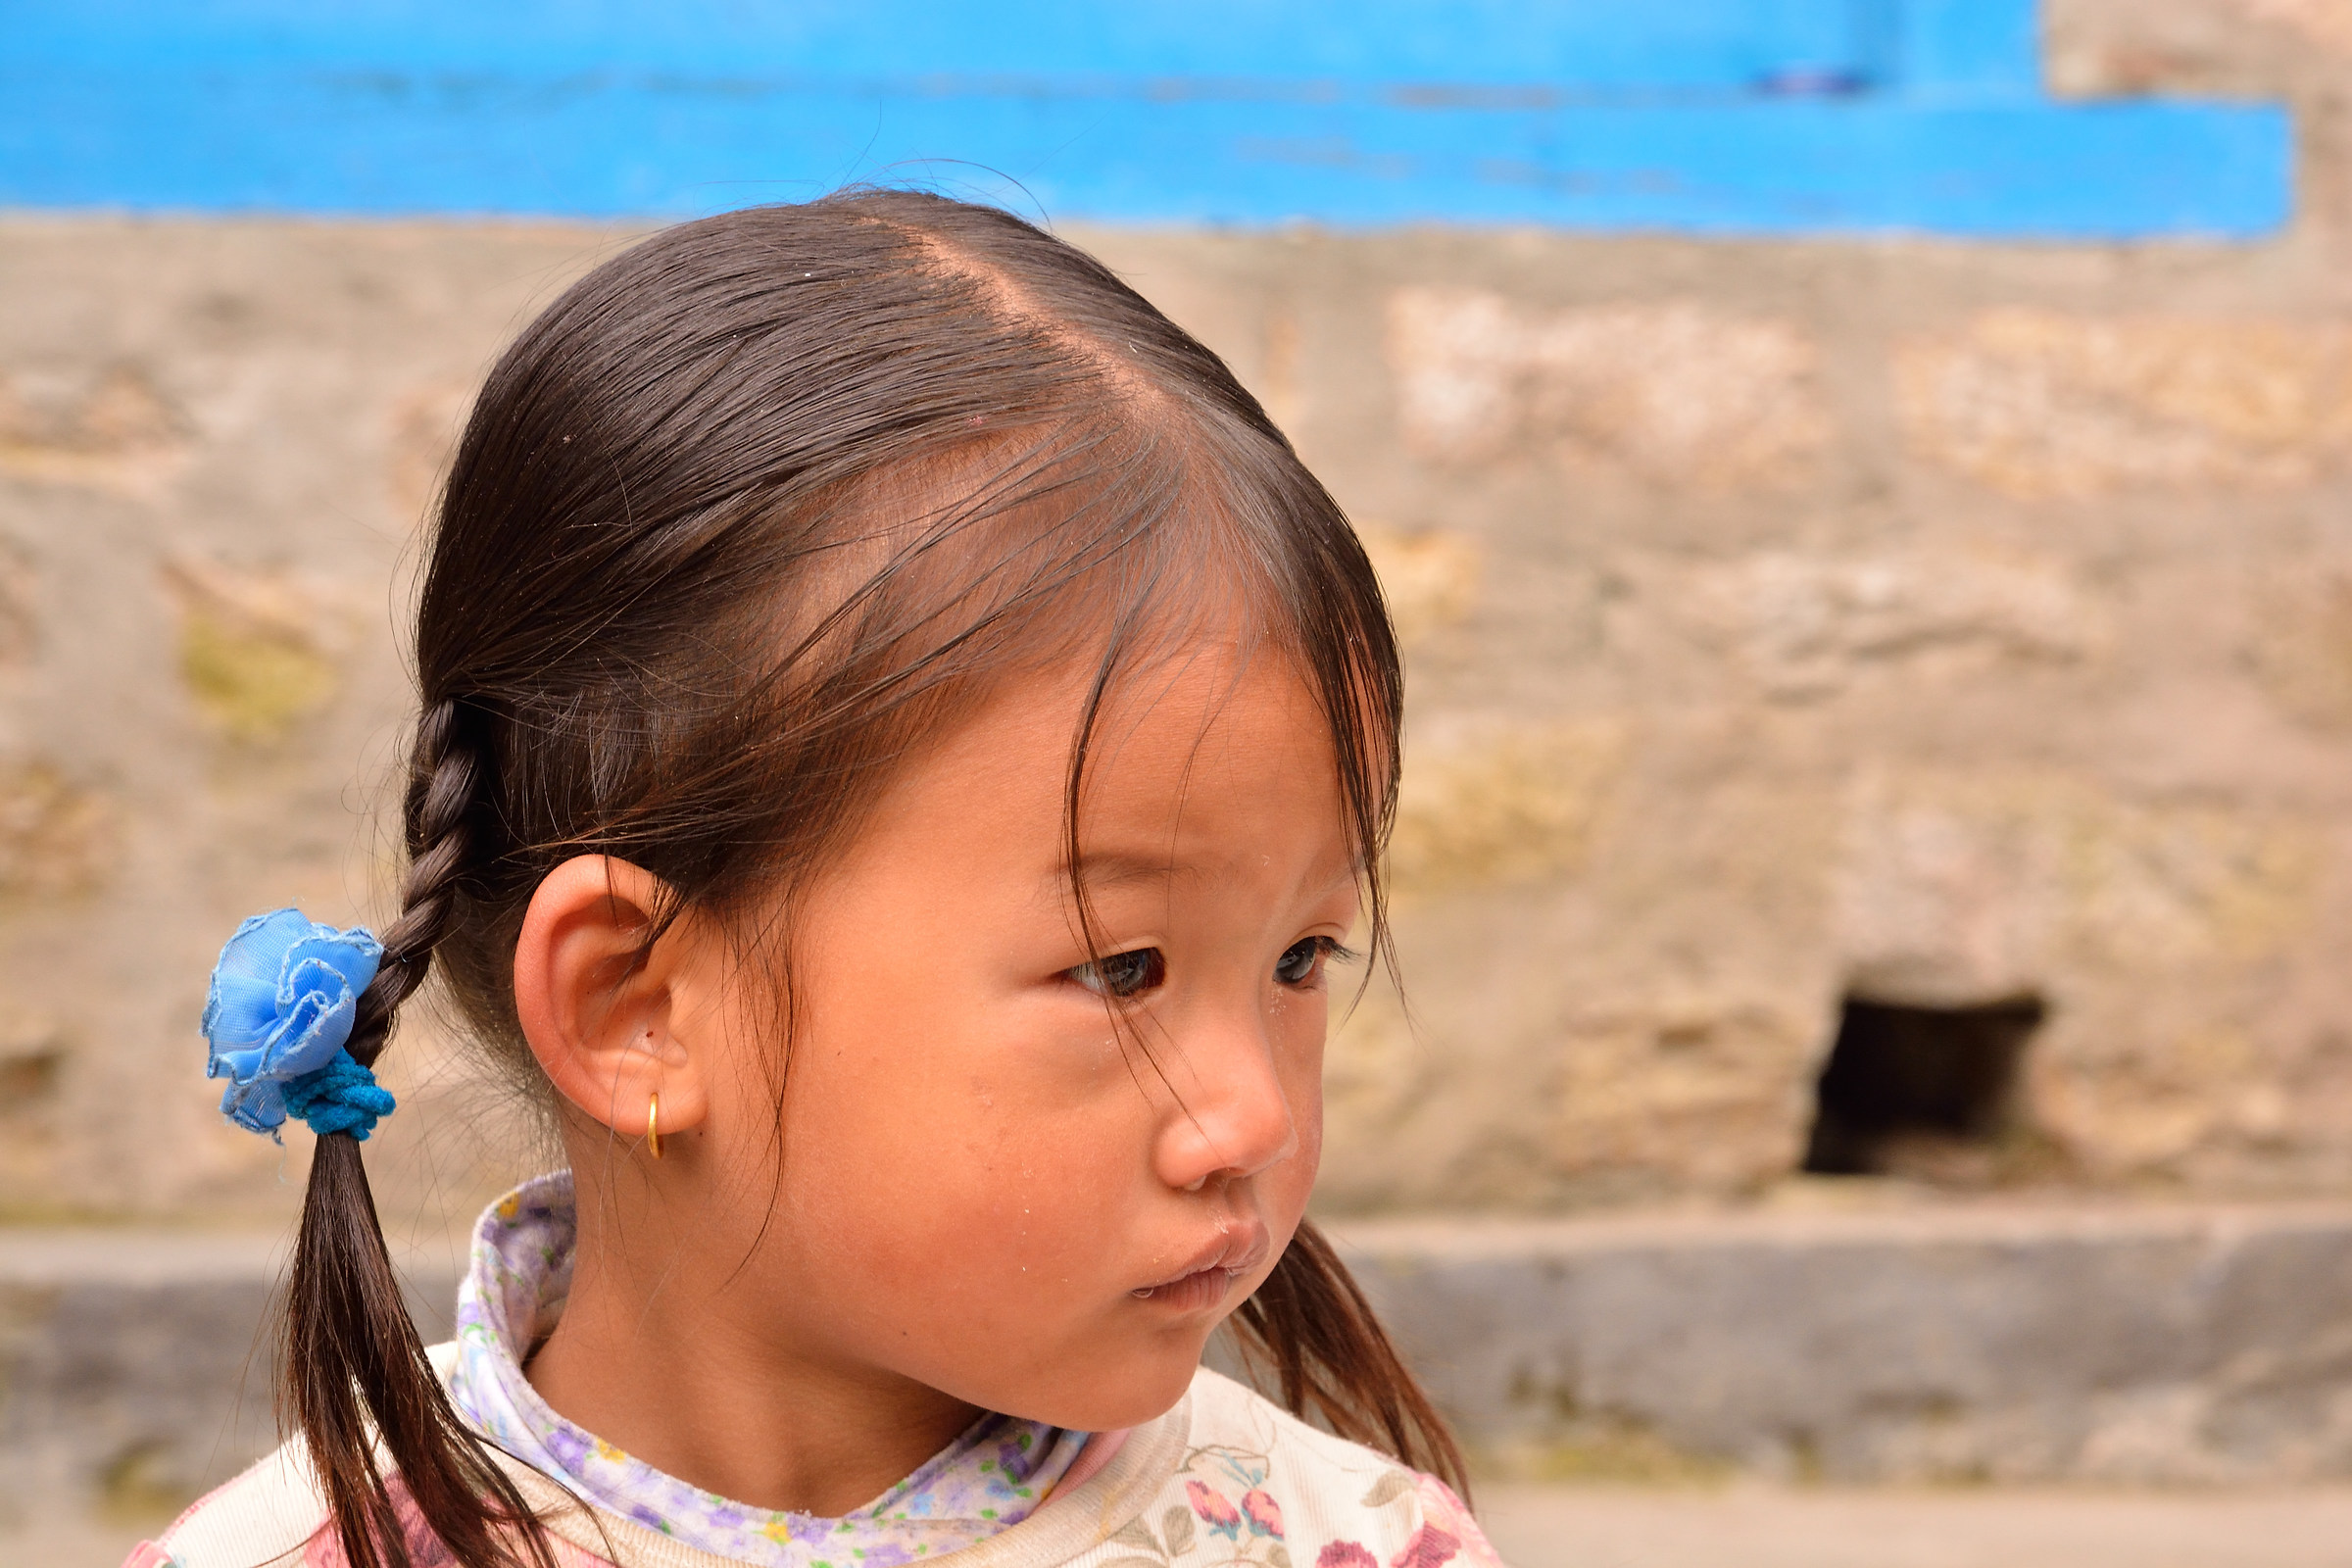 nepal - portrait of little girl in the village of Phakding...